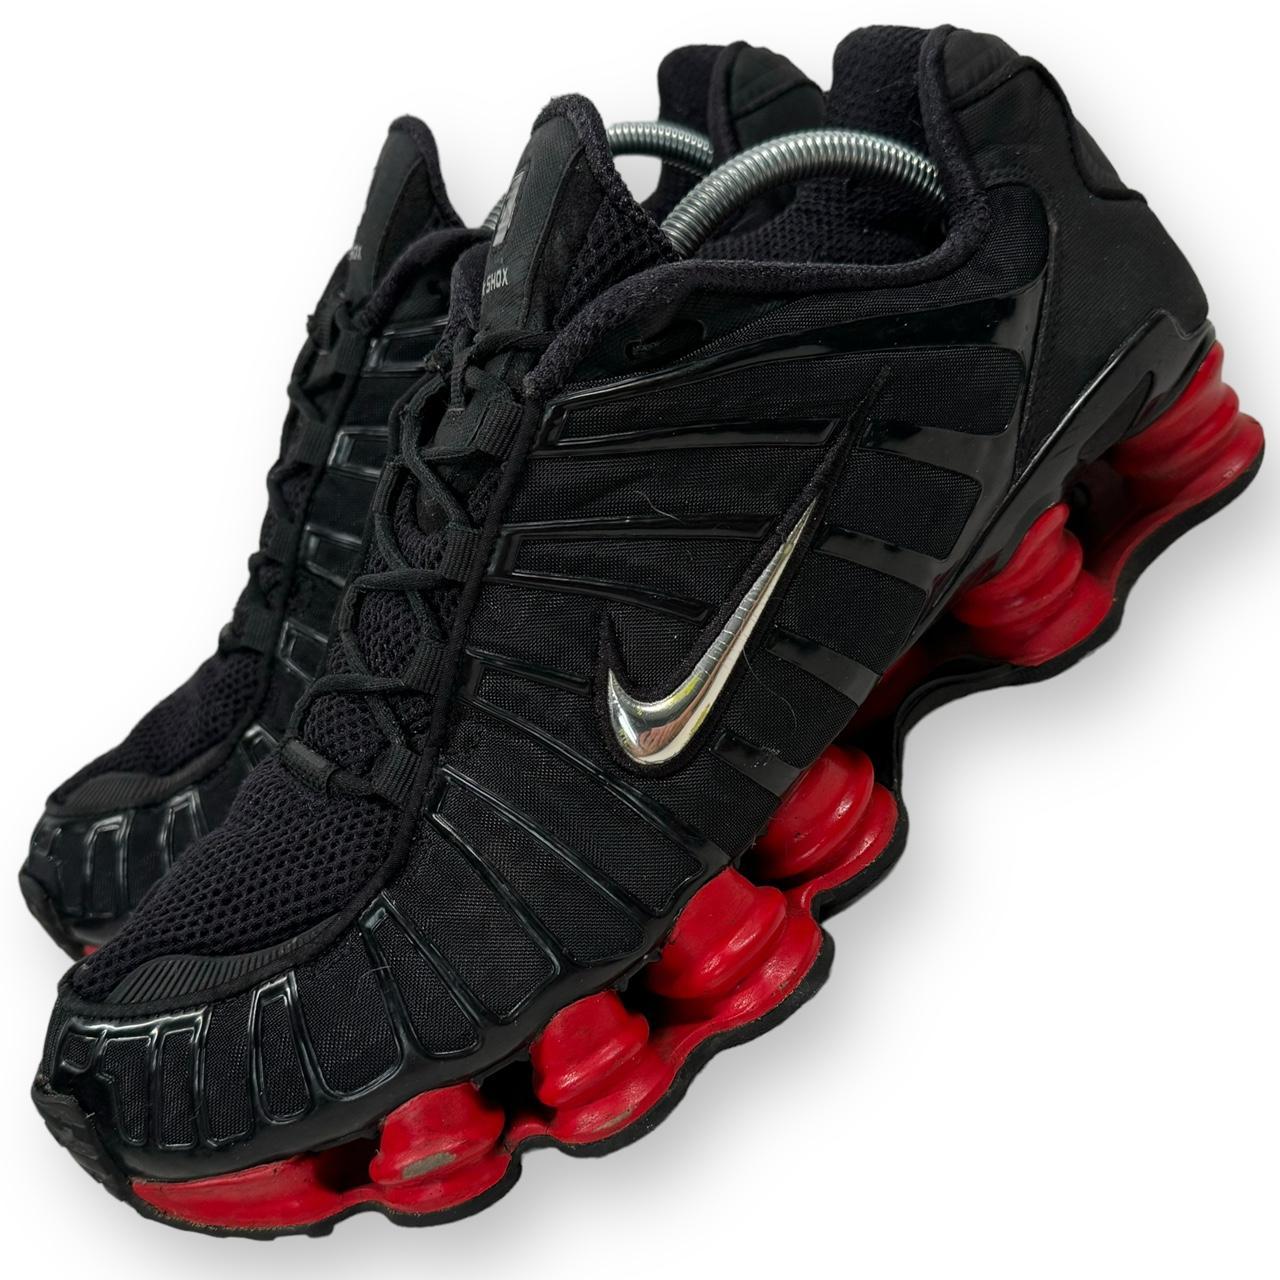 Nike shox TL skepta red black Size UK 10, US... - Depop